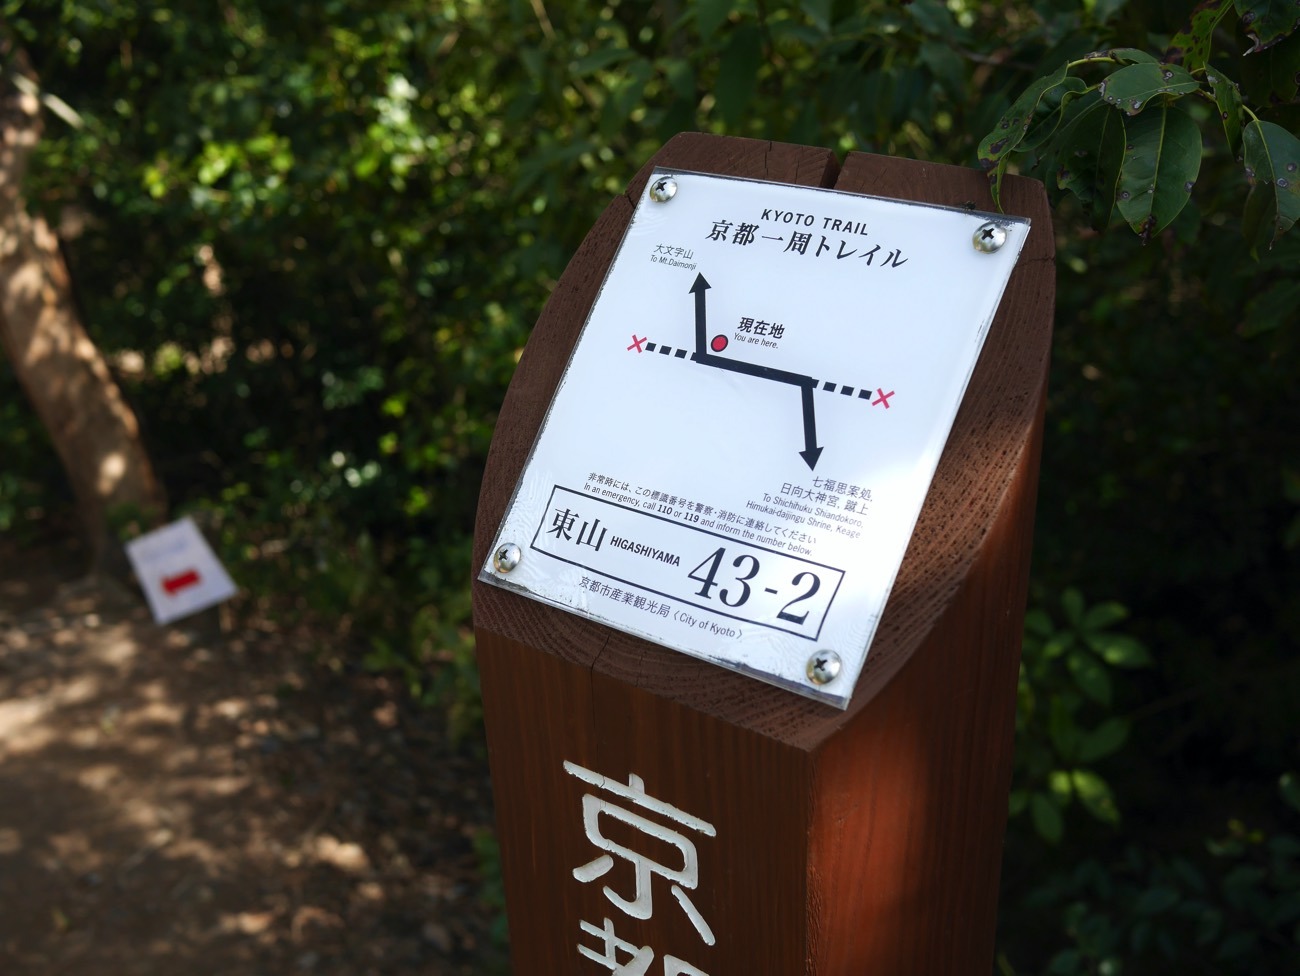 「京都一周トレイル」の道標